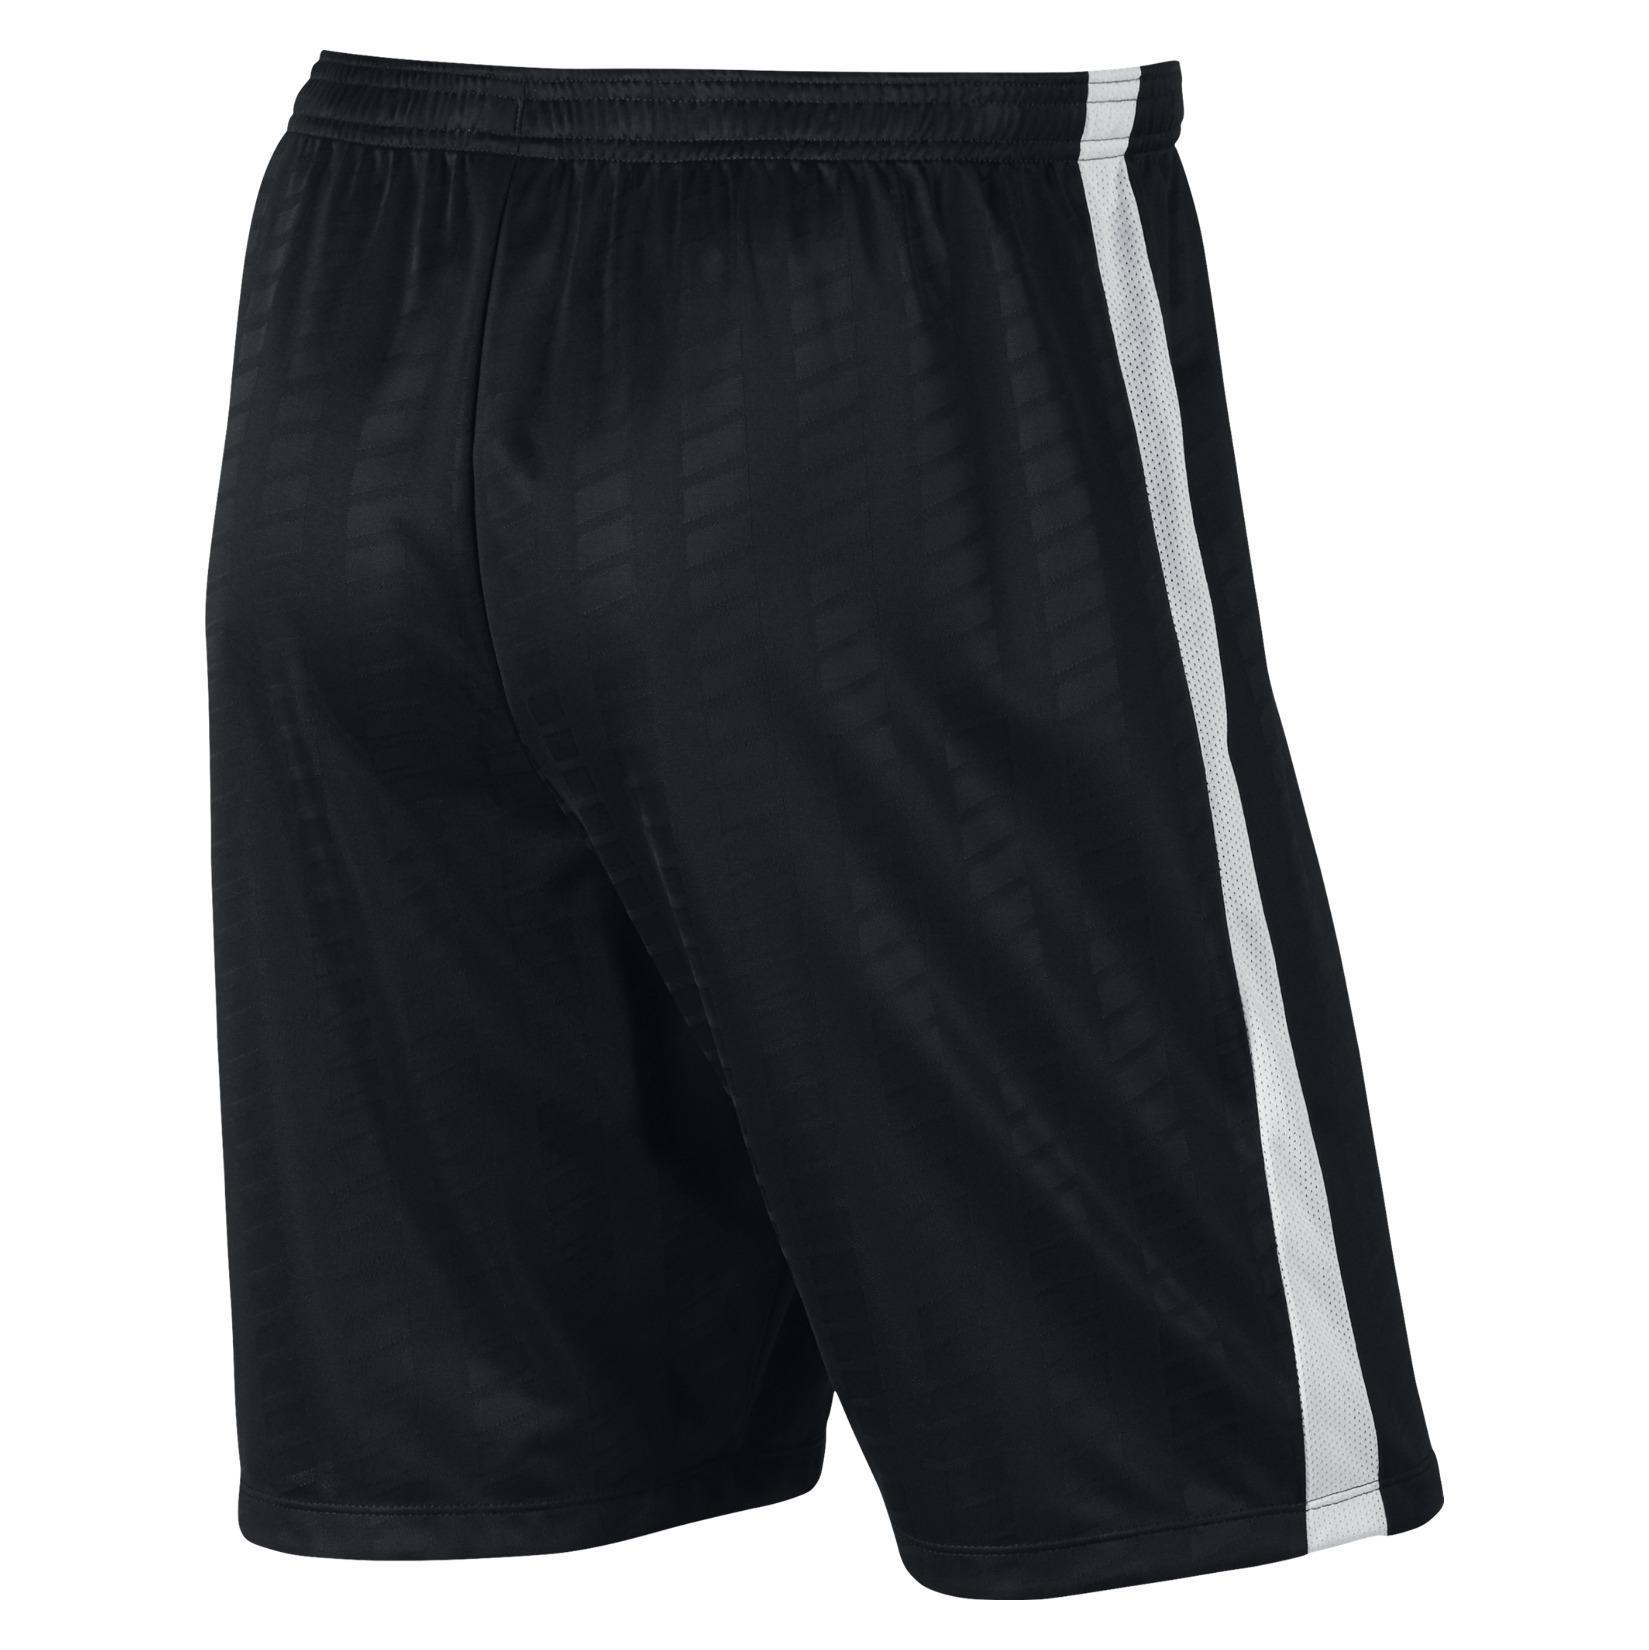 Nike Academy Football Short - Kitlocker.com